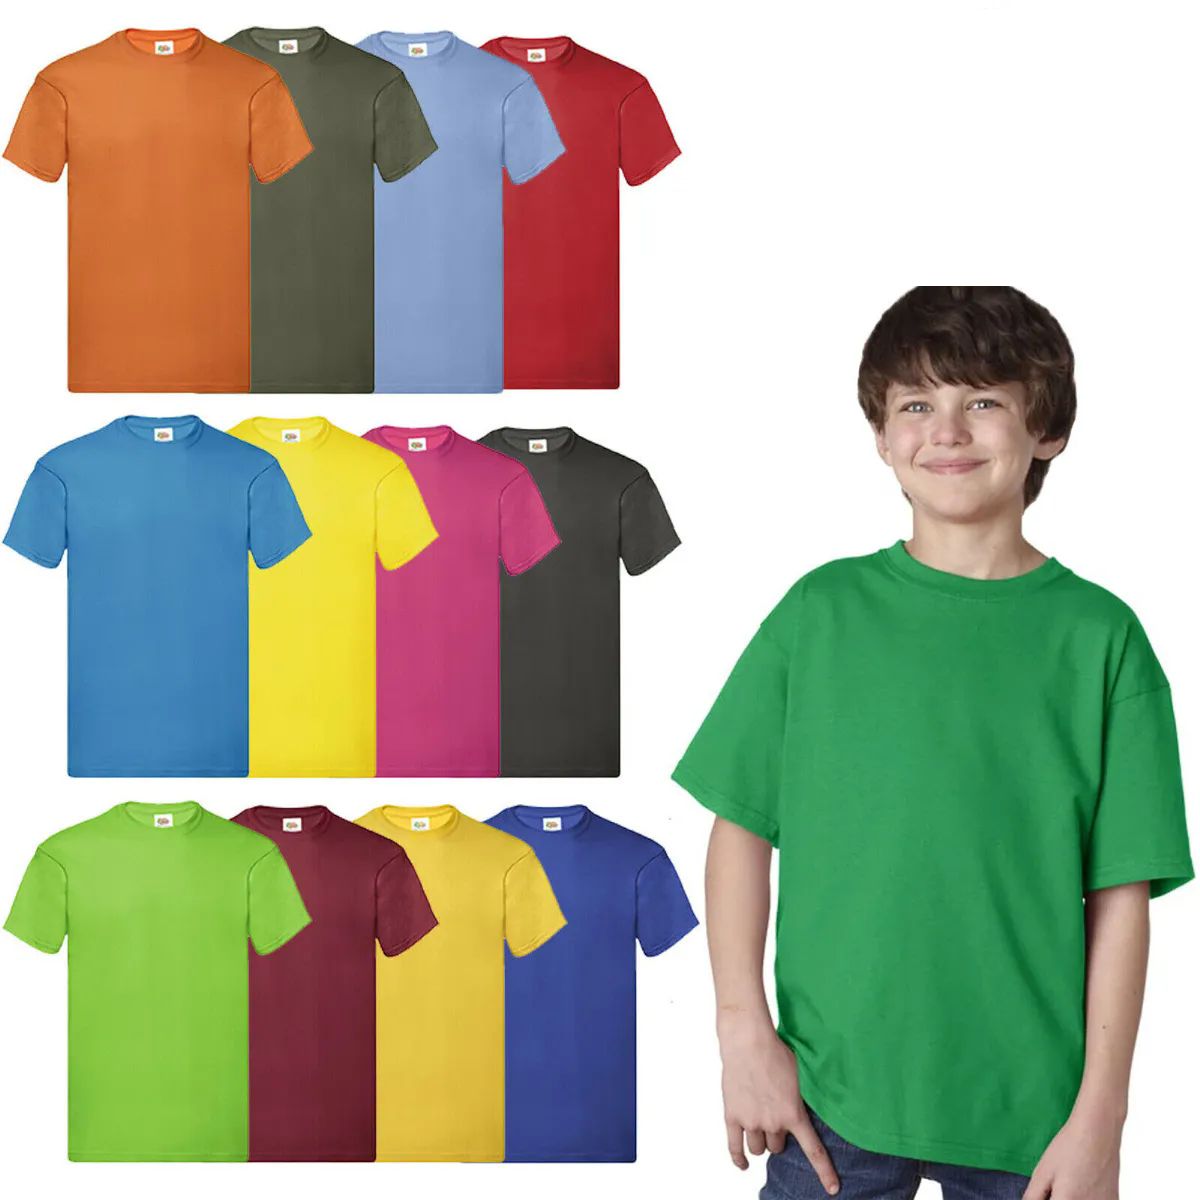 144 Wholesale Billion Hats Kids Youth Cotton Assorted Colors T Shirts Size L